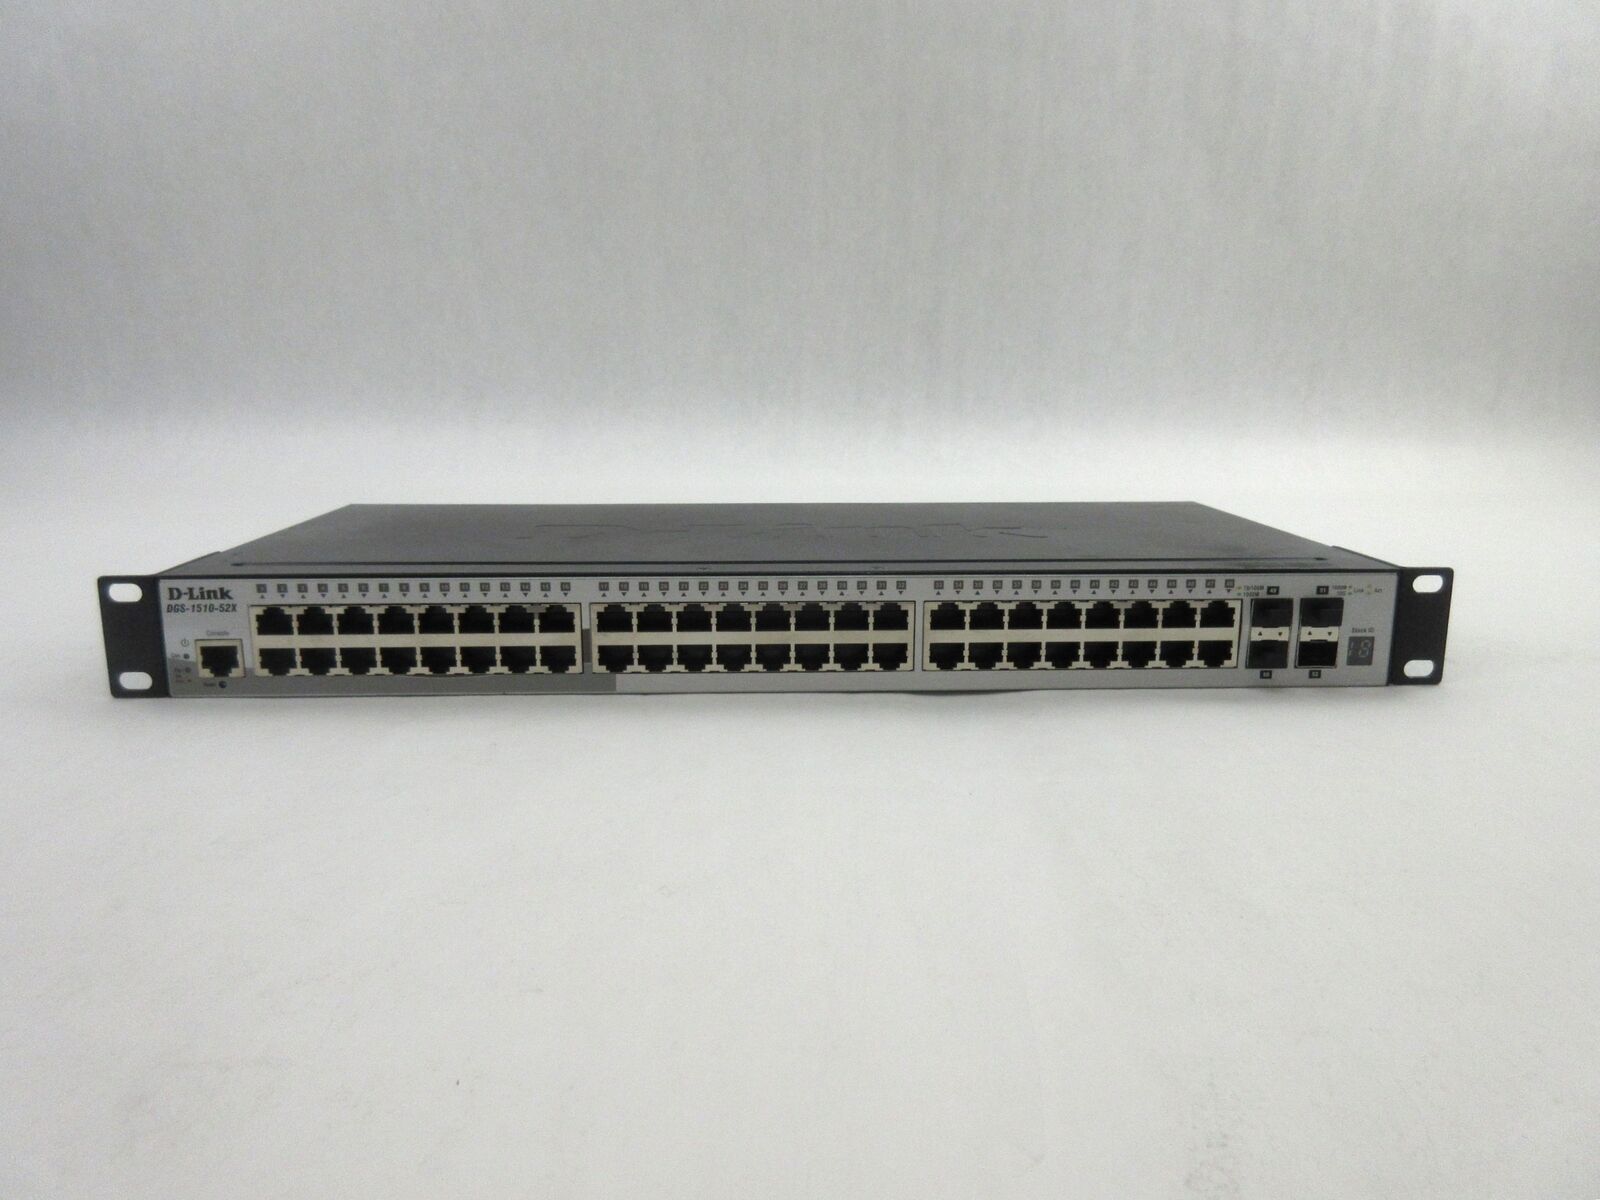 D-Link DGS 1510 Series 52 Port Ethernet Switch, DGS-1510-52X, C4*383